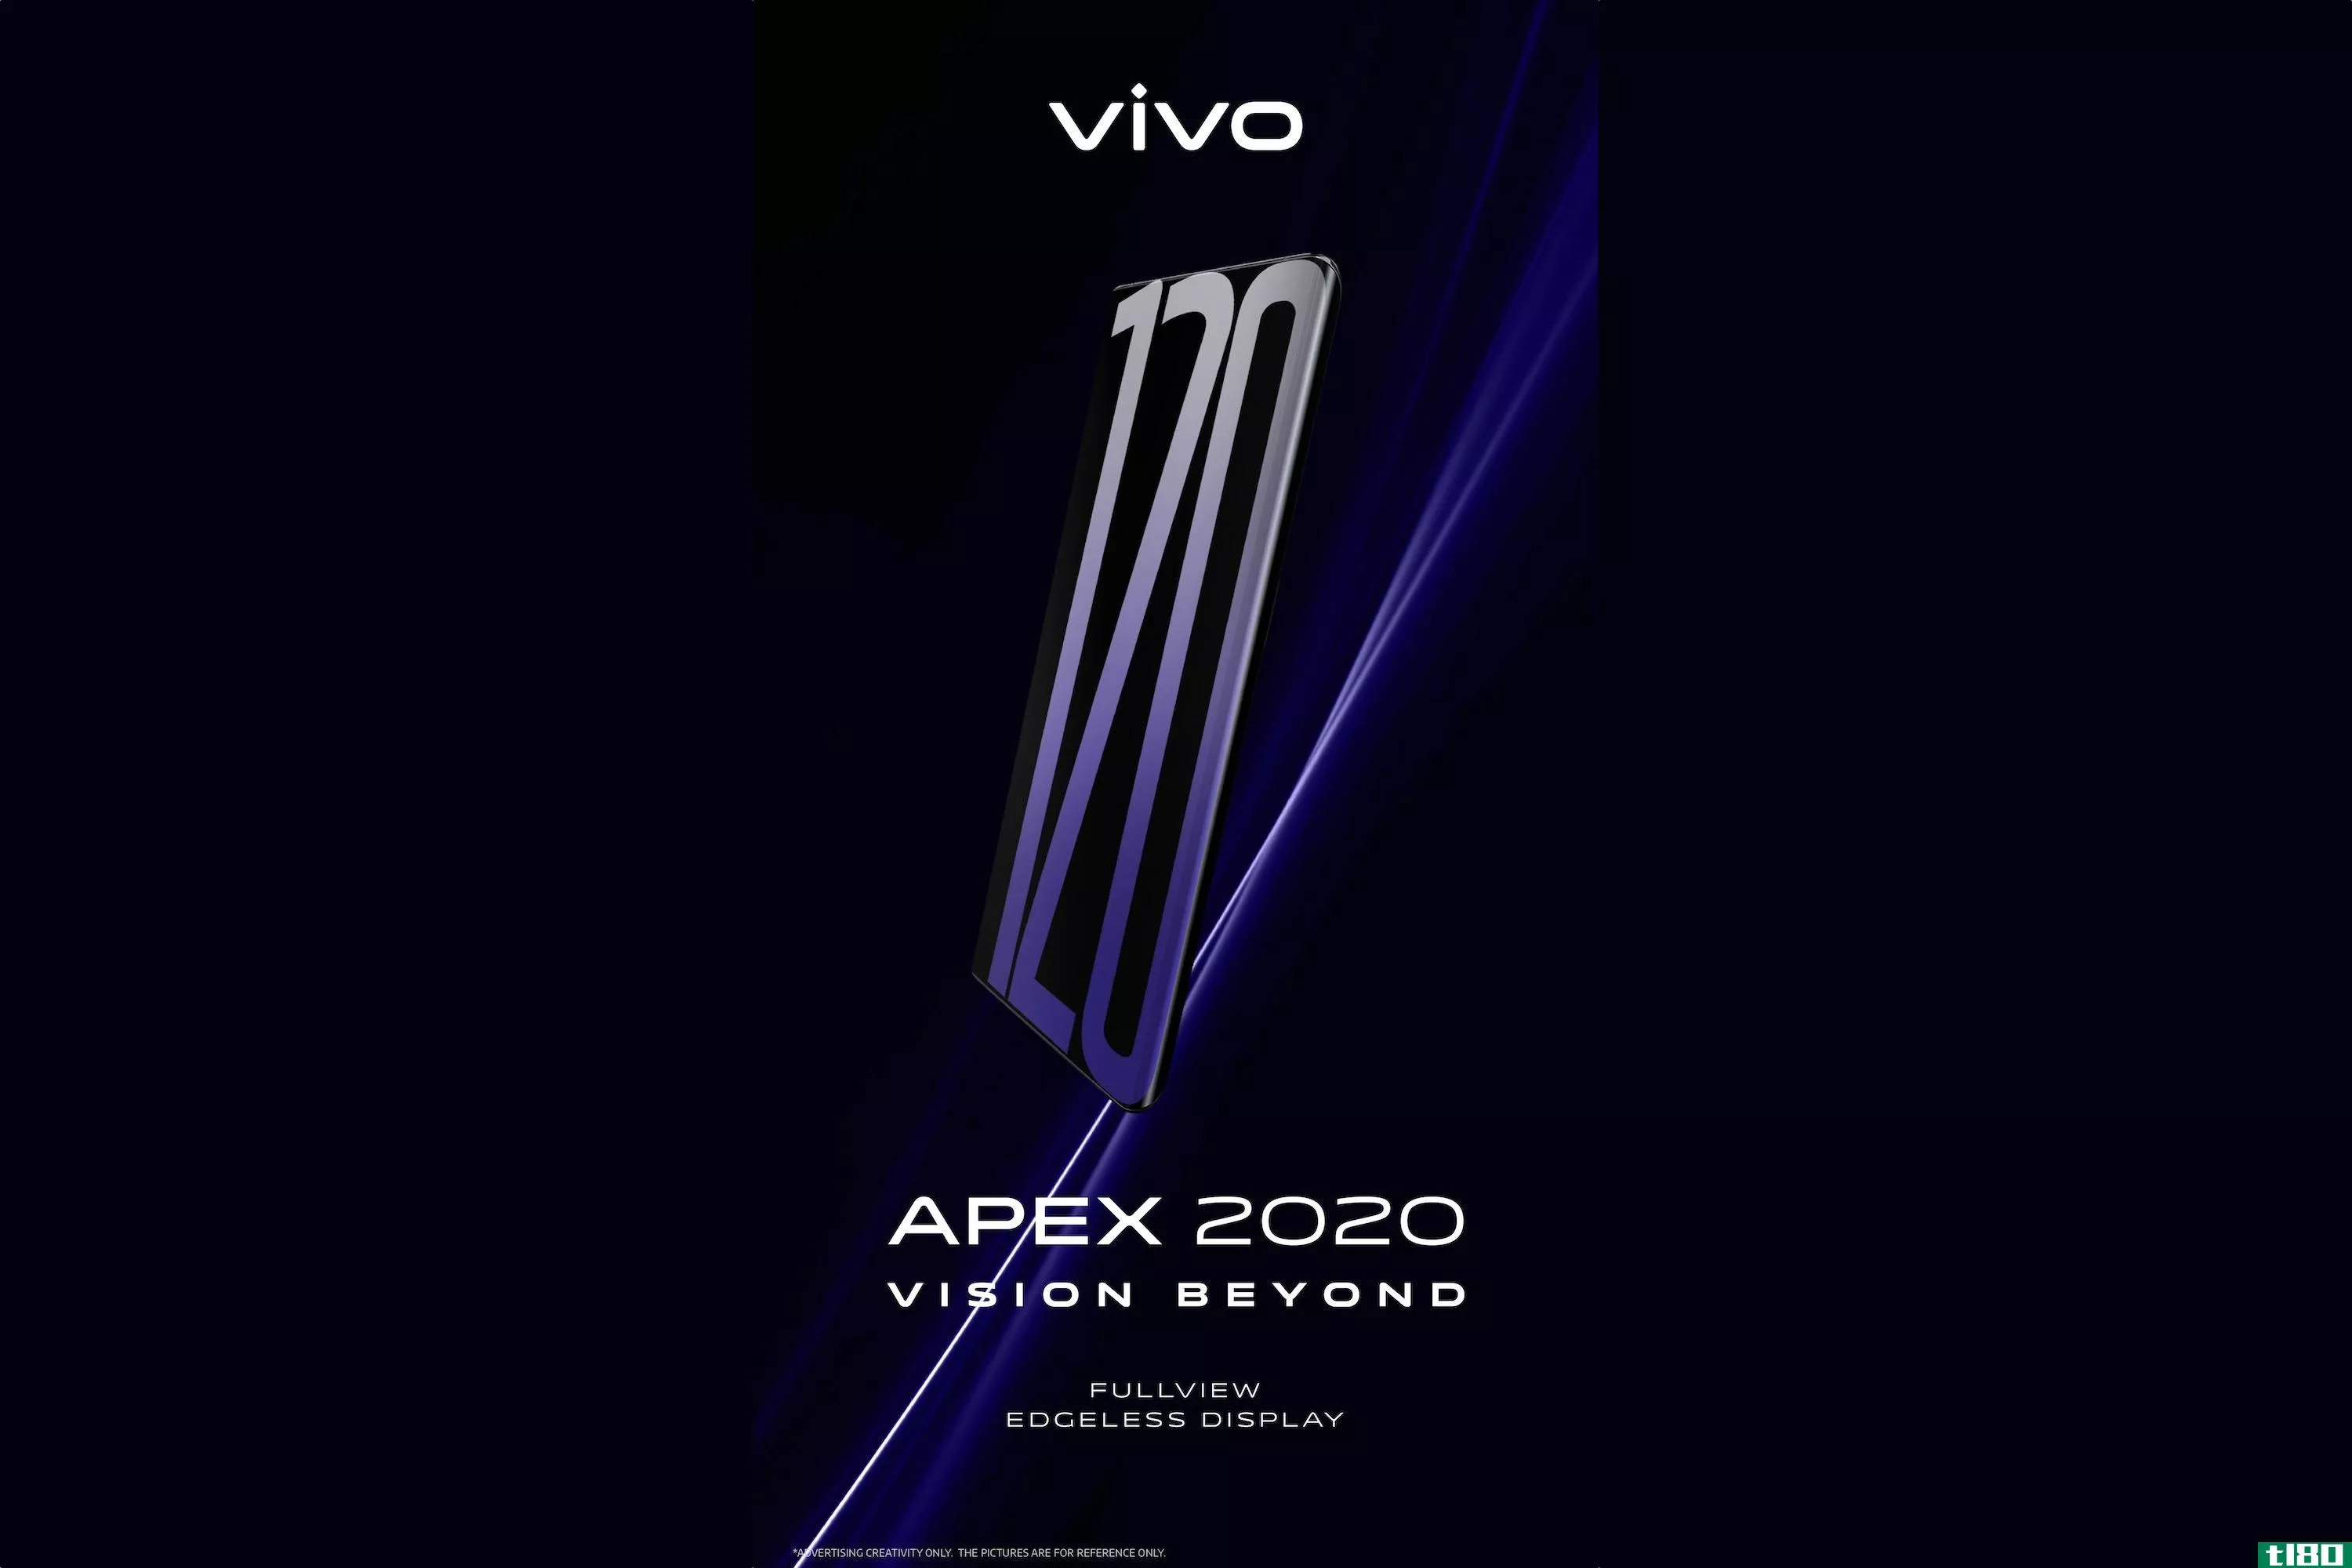 维梧的apex 2020概念手机将于周五上市